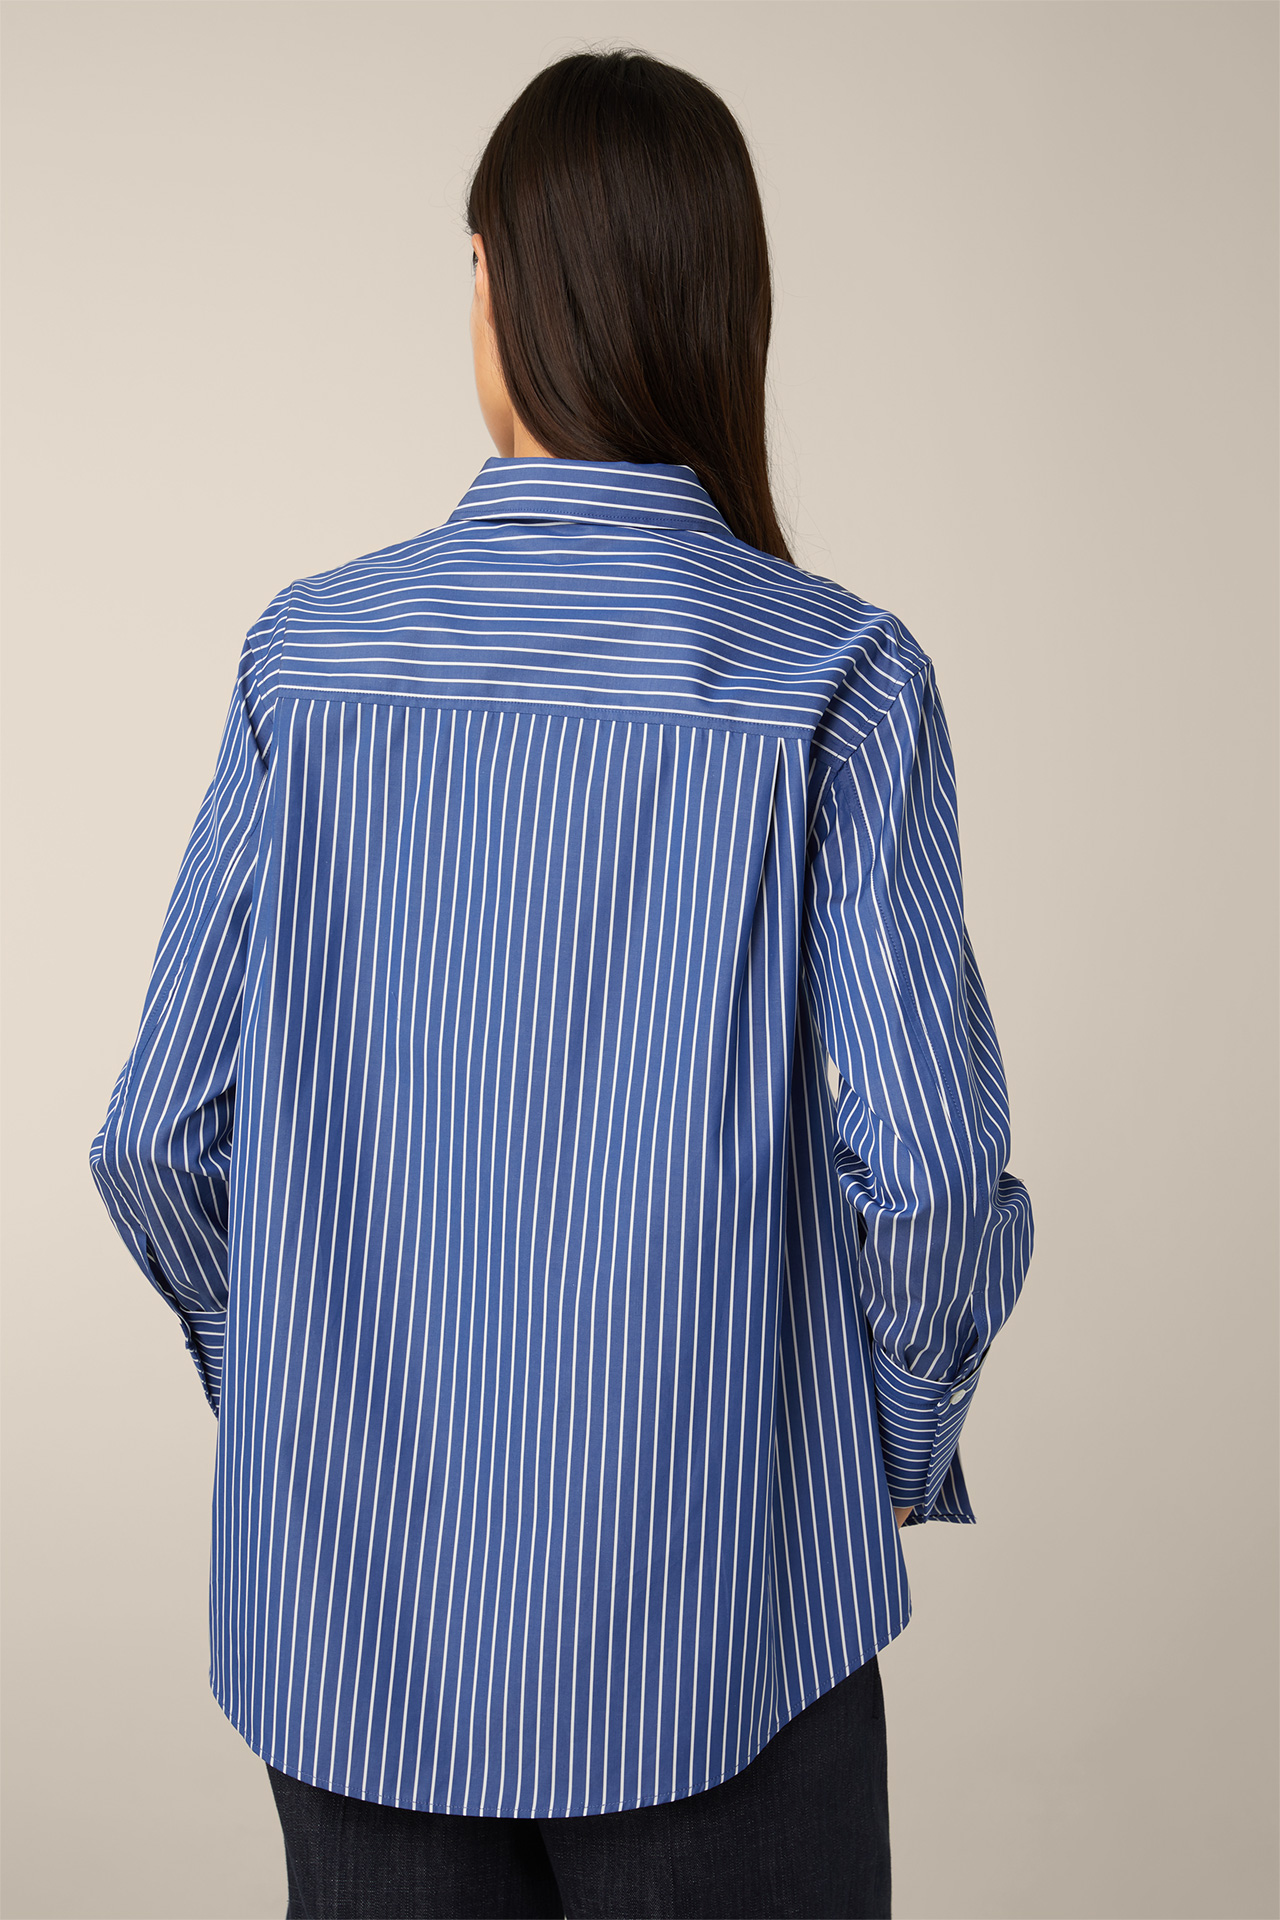 Popeline-Baumwoll-Streifen-Hemd-Bluse in Blau-Weiß im windsor. Online-Shop - gestreift